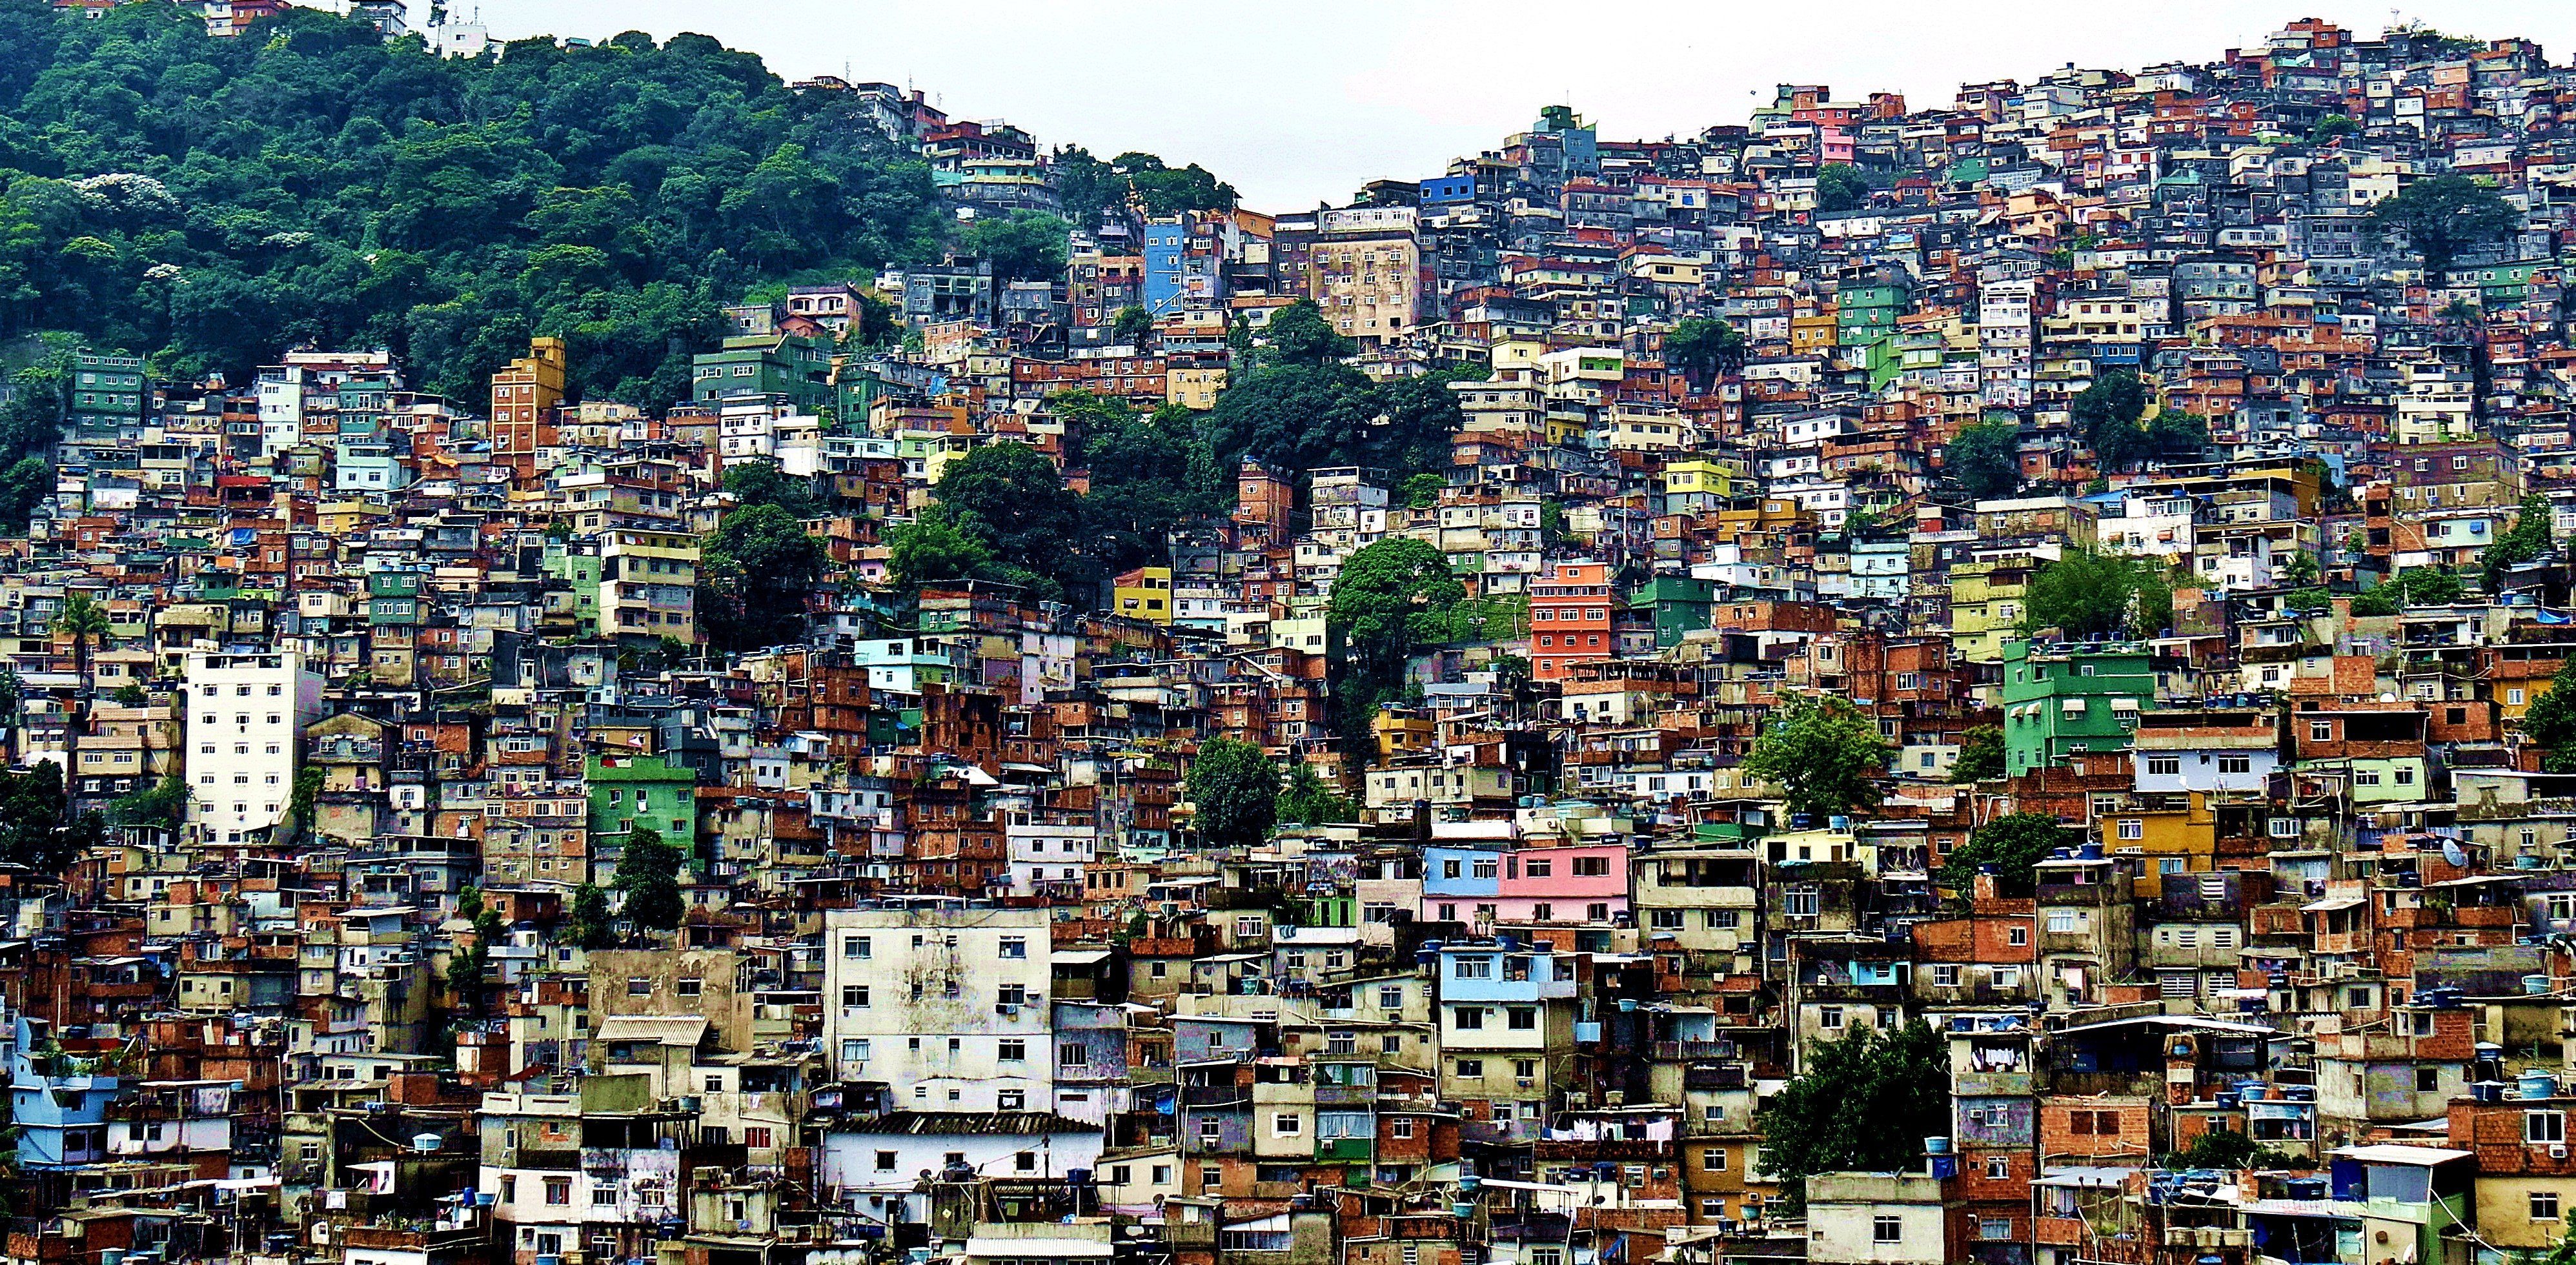 Favela Wallpaper Free Favela Background